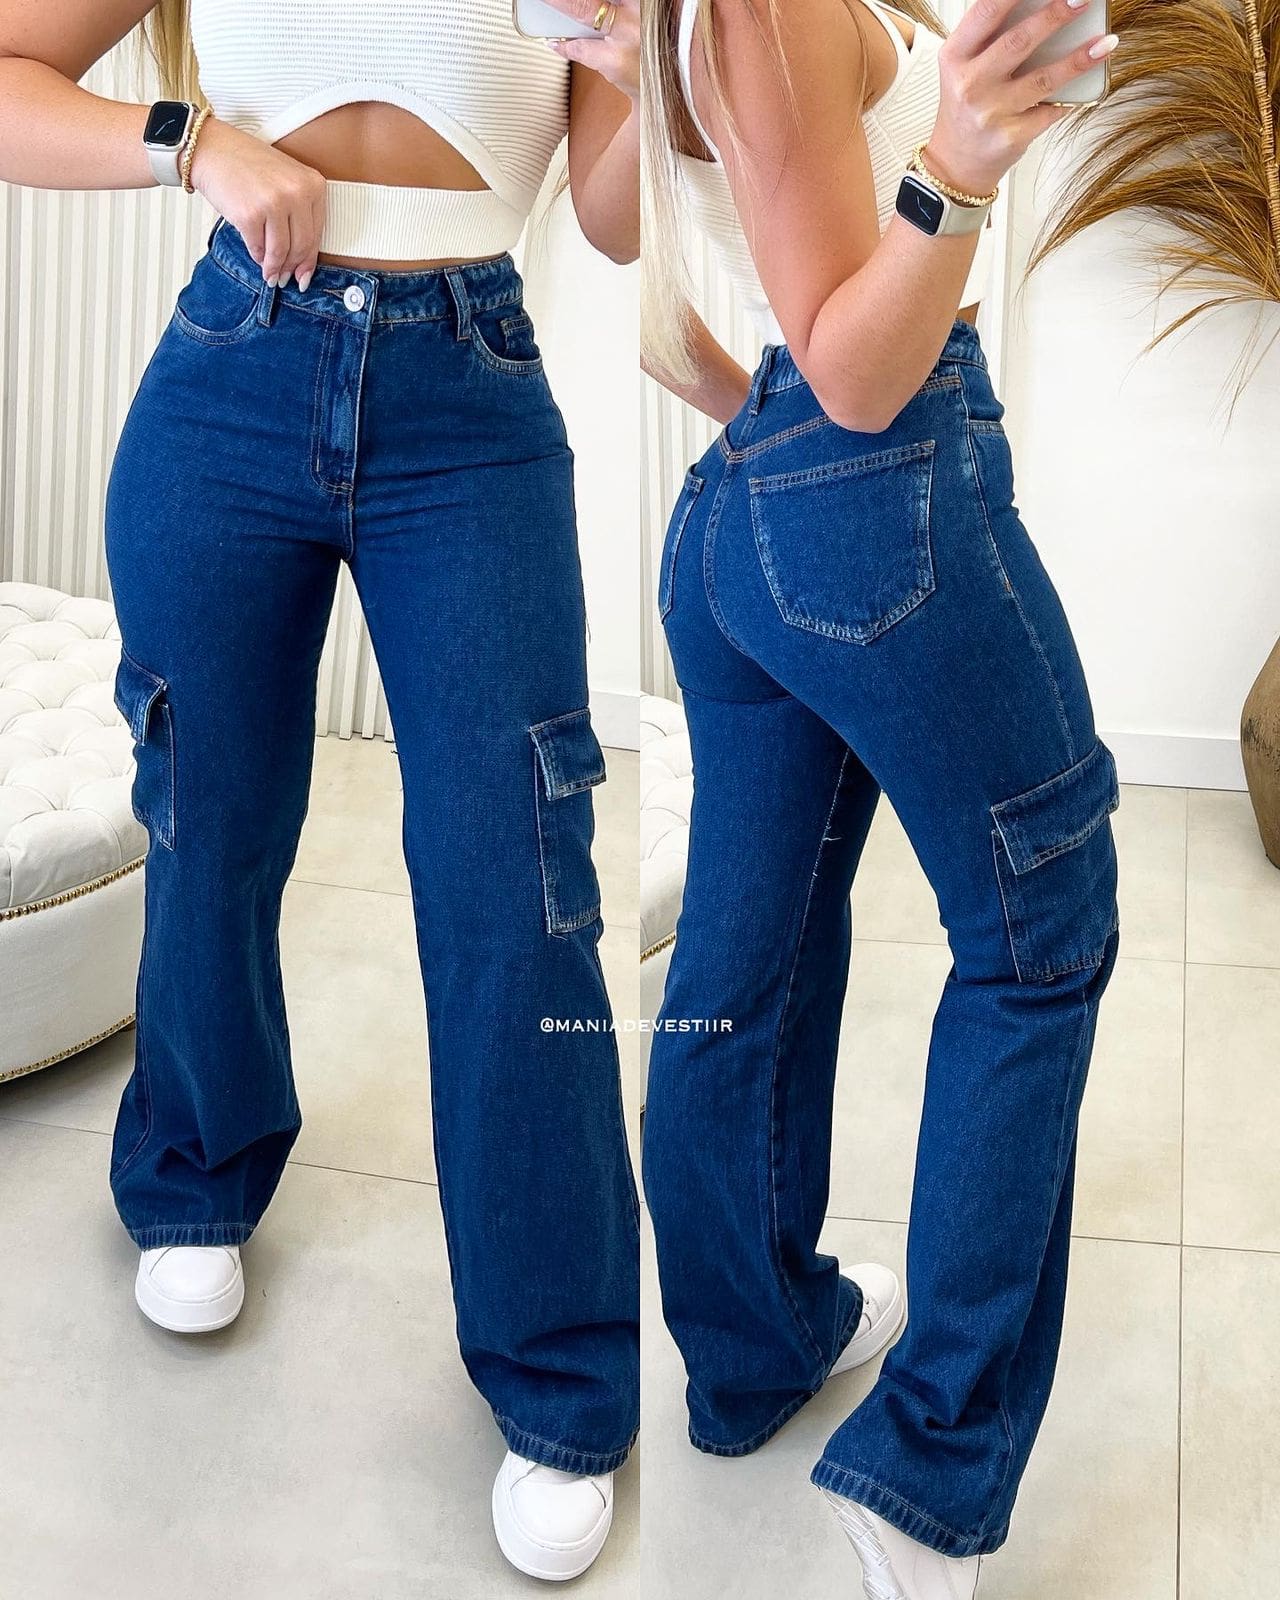 calça jeans dafne 26041